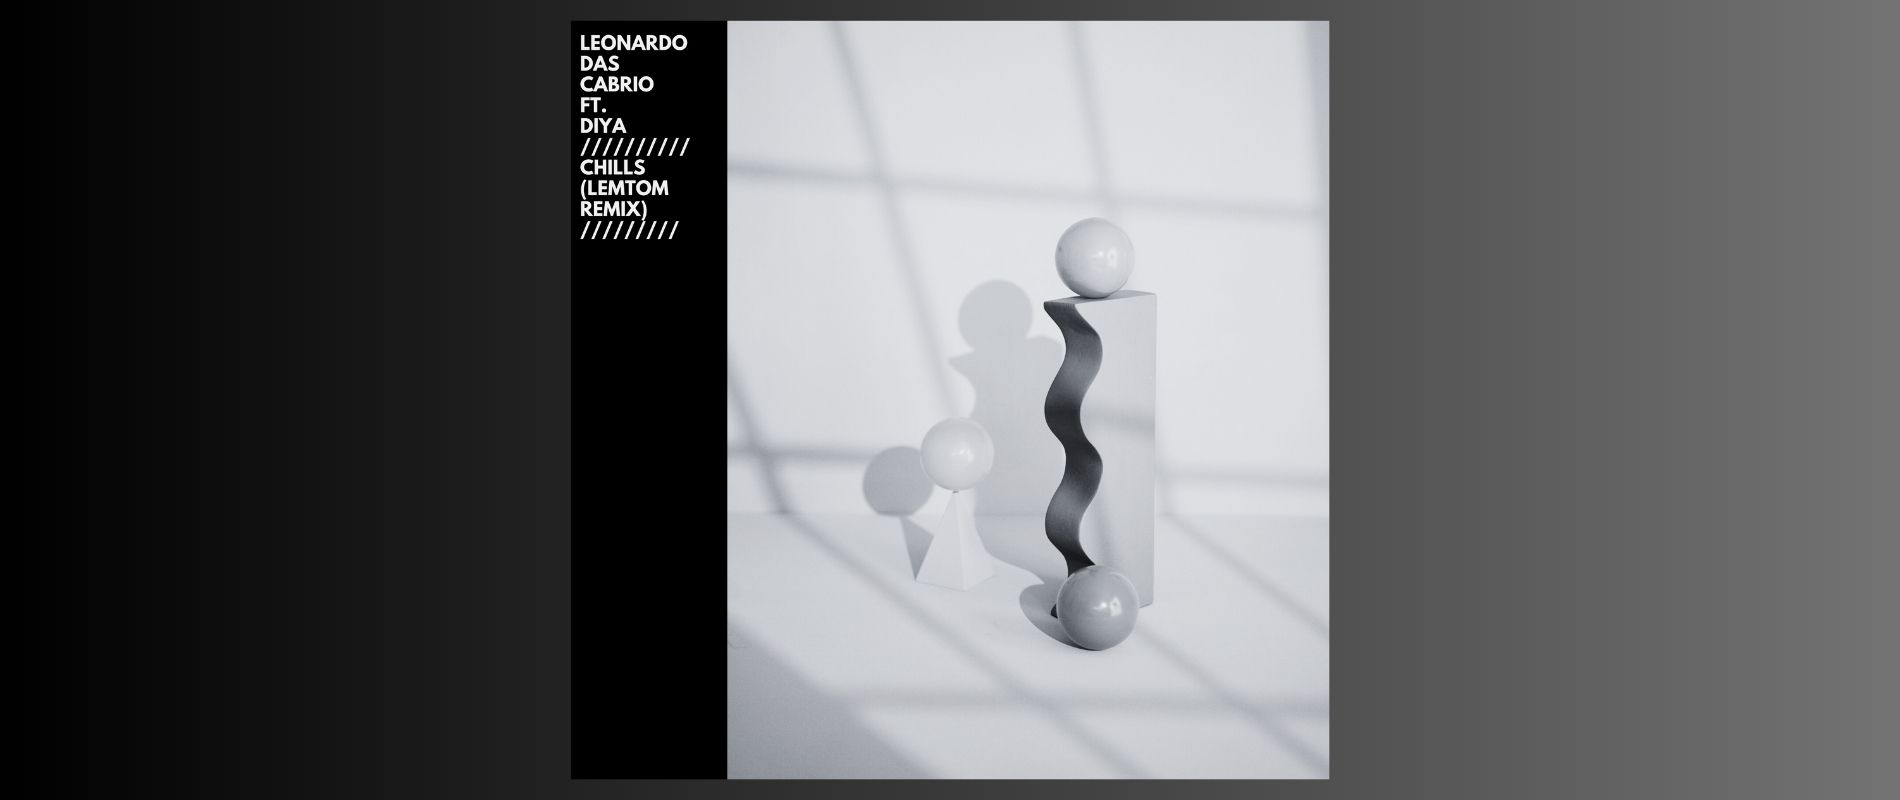 LDC - Chills (Lemton remix) banner